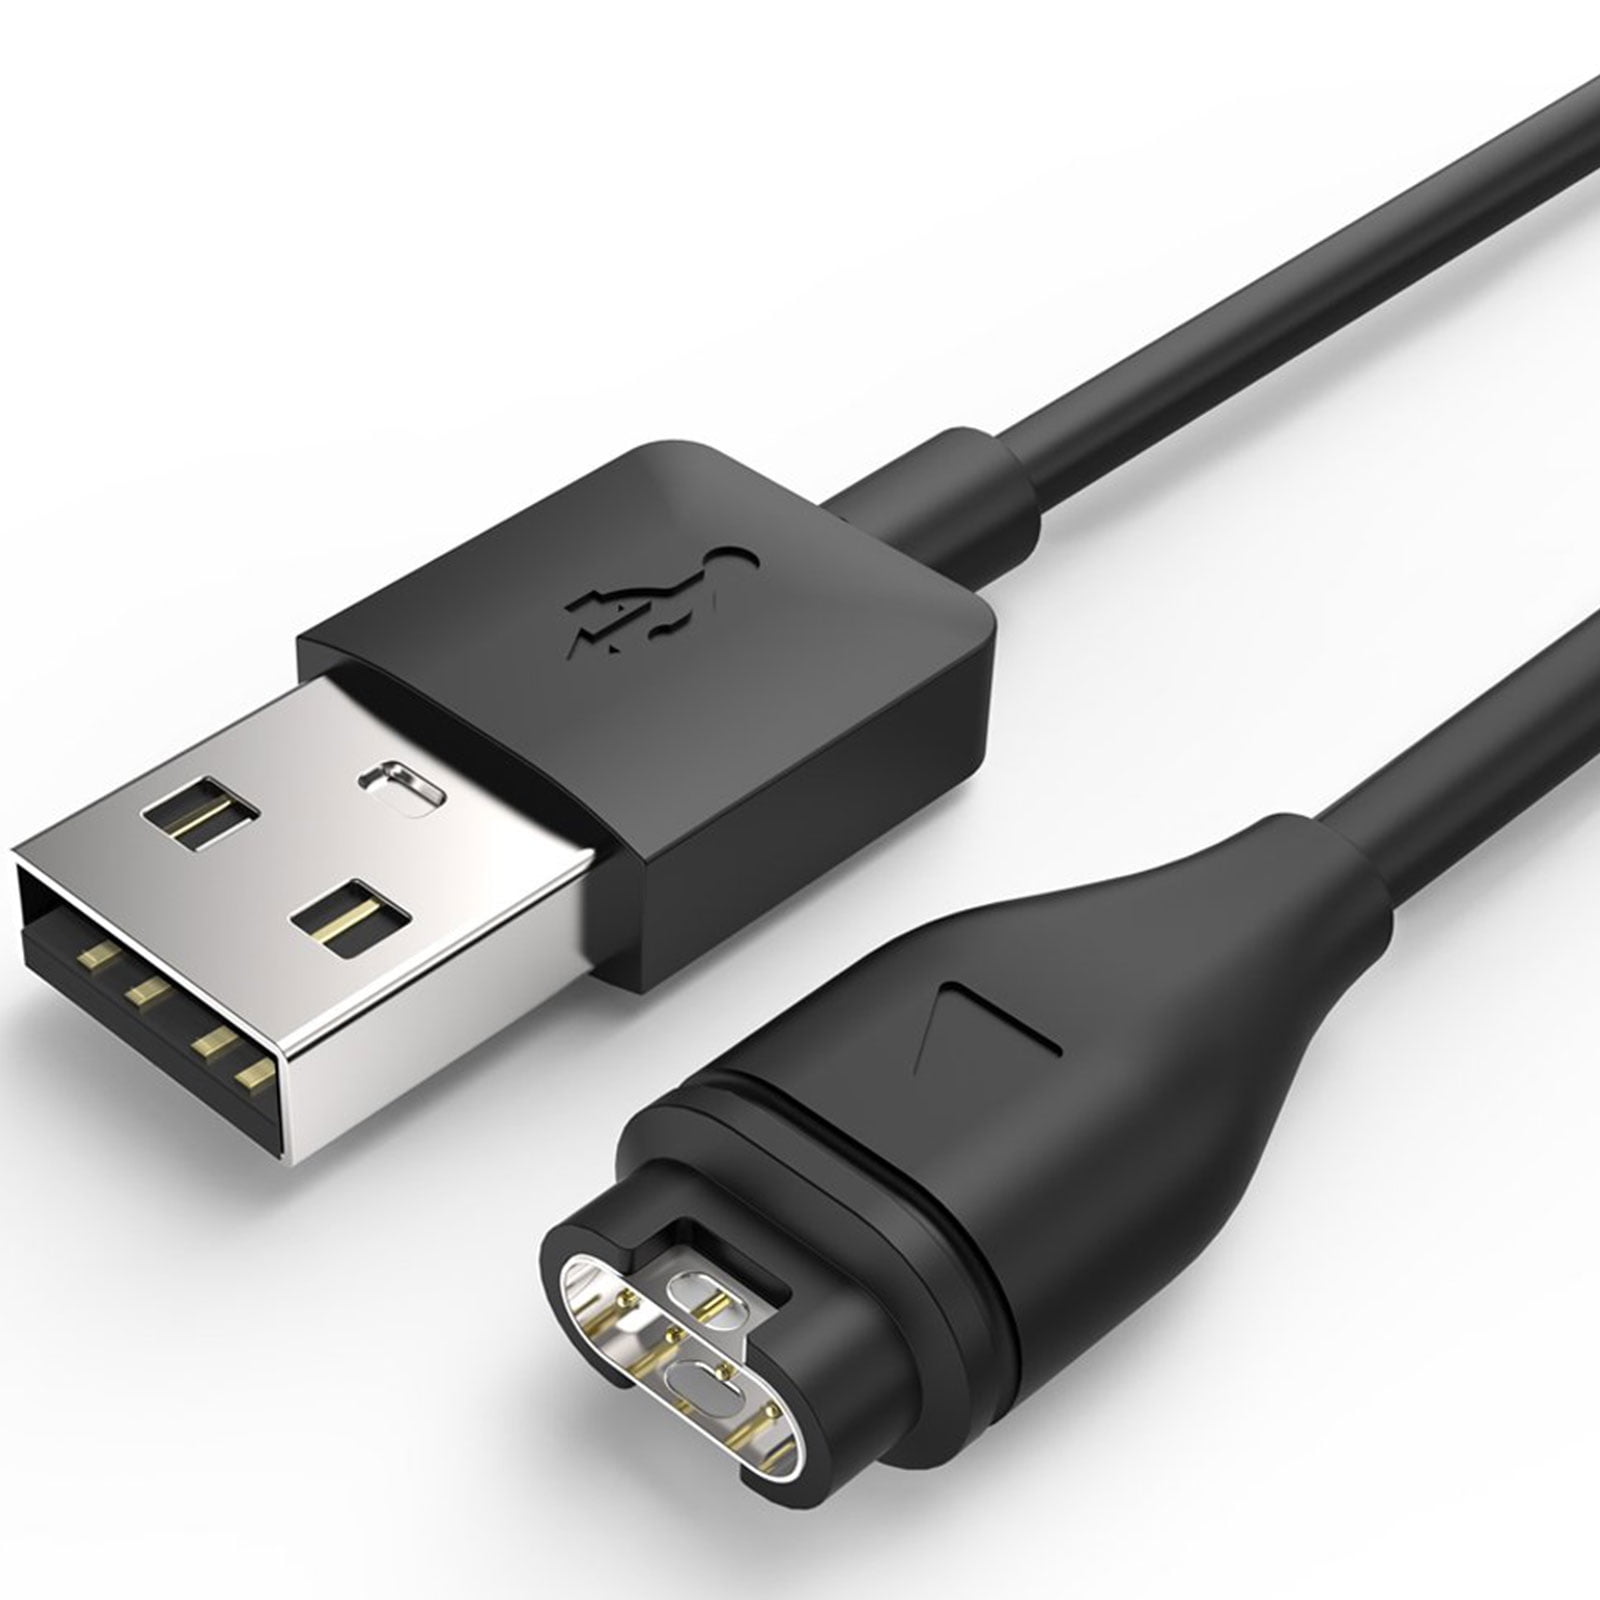 USB revertido cable cable de carga para Garmin Fenix 5 5s 5x 3 VivoActive vivo Sport ah 